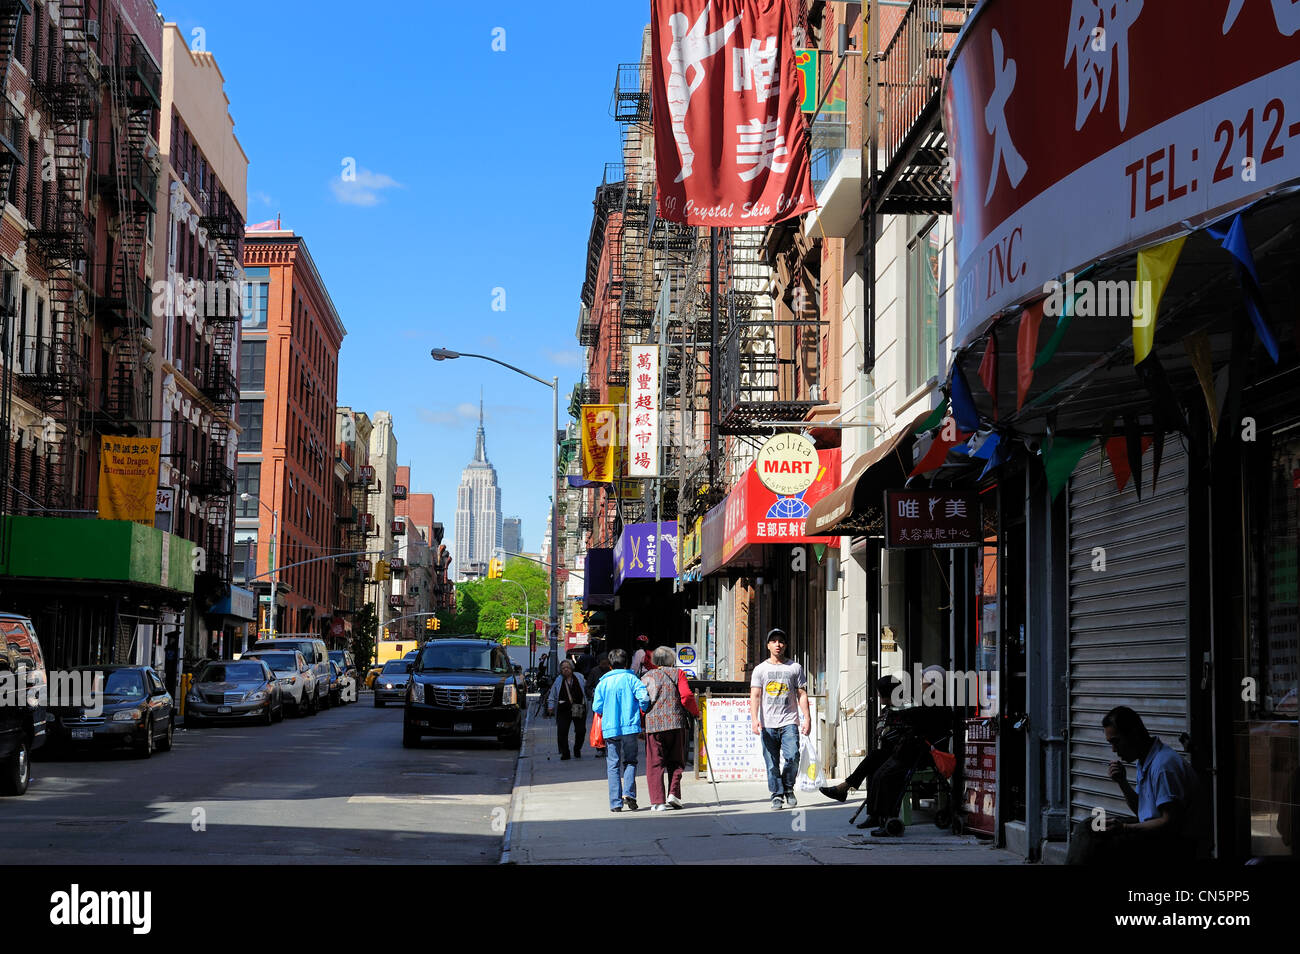 Vereinigte Staaten, New York City, Manhattan, Chinatown, Mott Street Läden Stockfoto